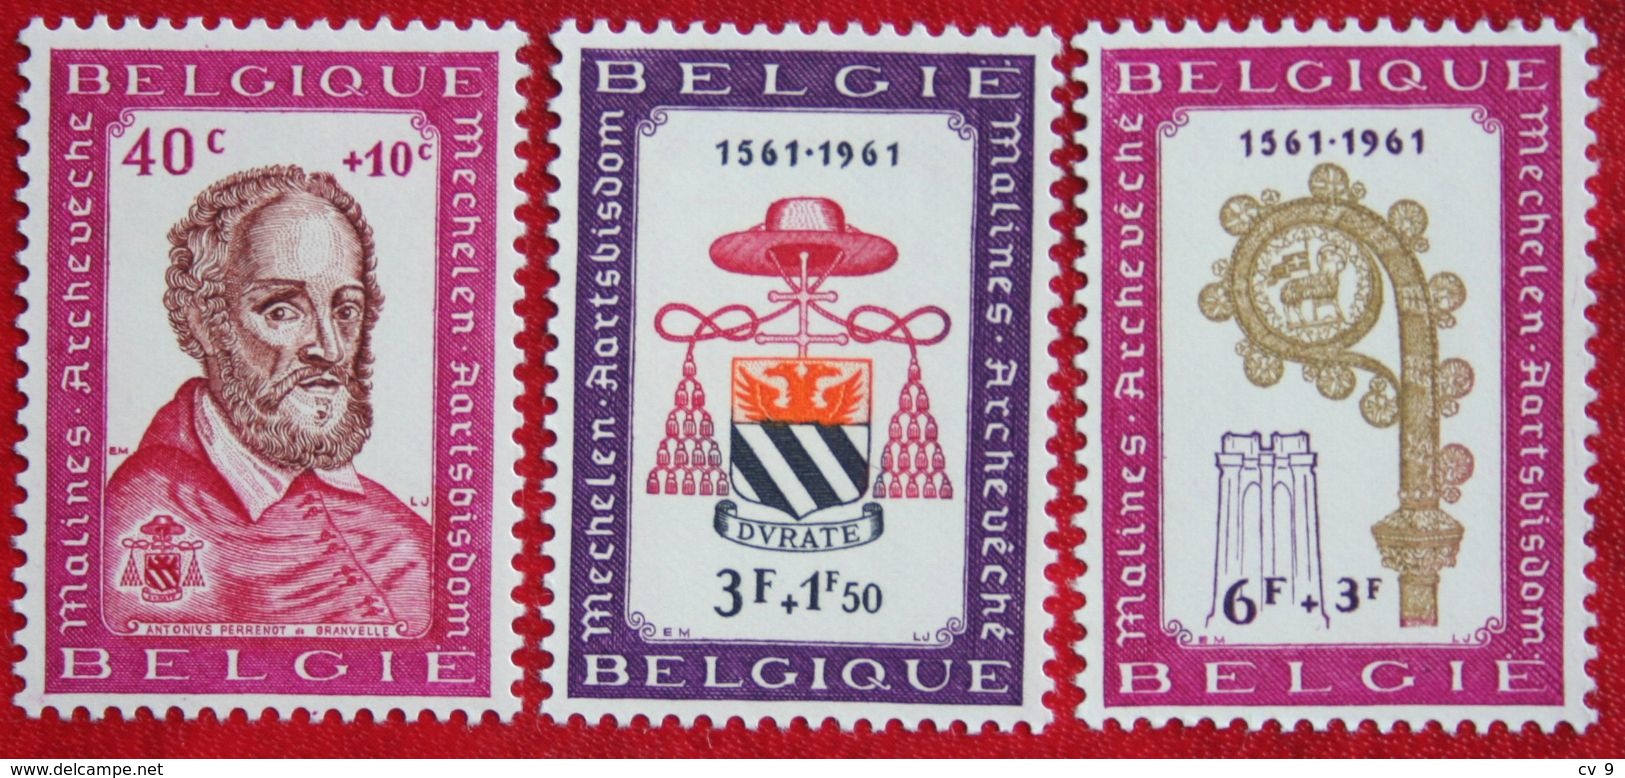 Mechelen Aardsbisdom OBC N° 1188-1190 (Mi 1248-1250) 1961 POSTFRIS MNH ** BELGIE BELGIEN / BELGIUM - Unused Stamps